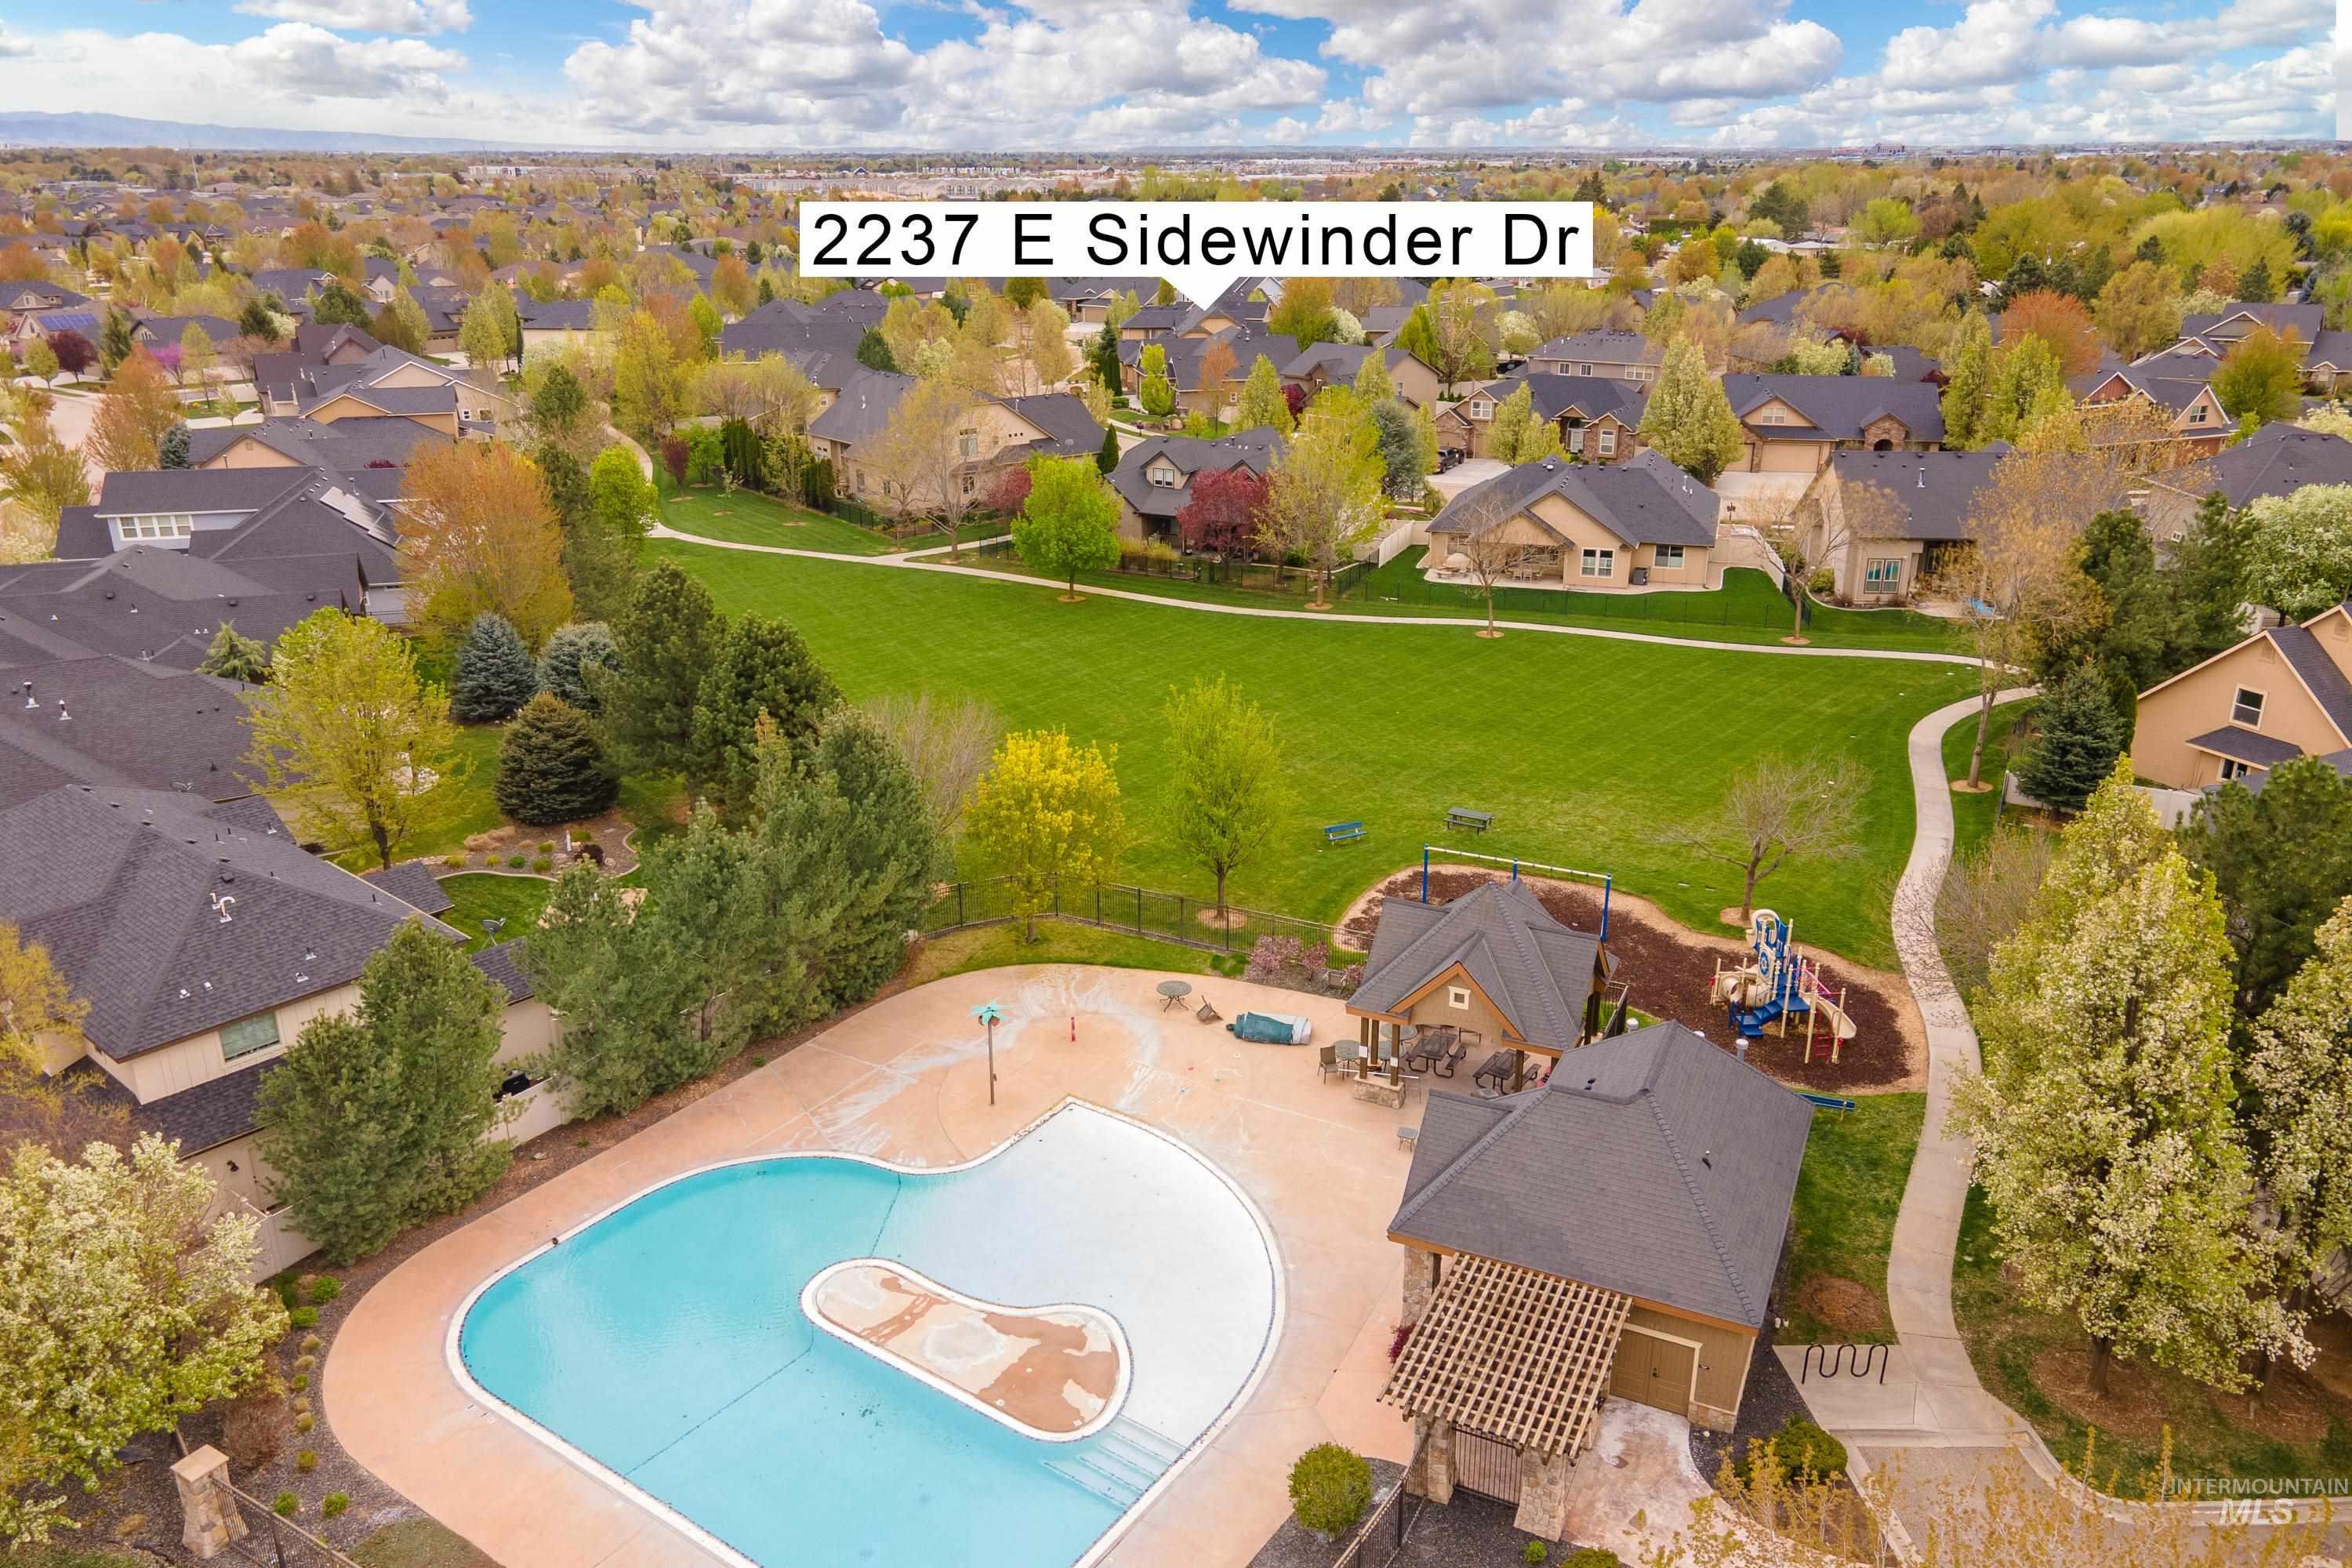 2237 Sidewinder Dr., Meridian, Idaho 83646, 4 Bedrooms, 4 Bathrooms, Residential For Sale, Price $725,000,MLS 98841027